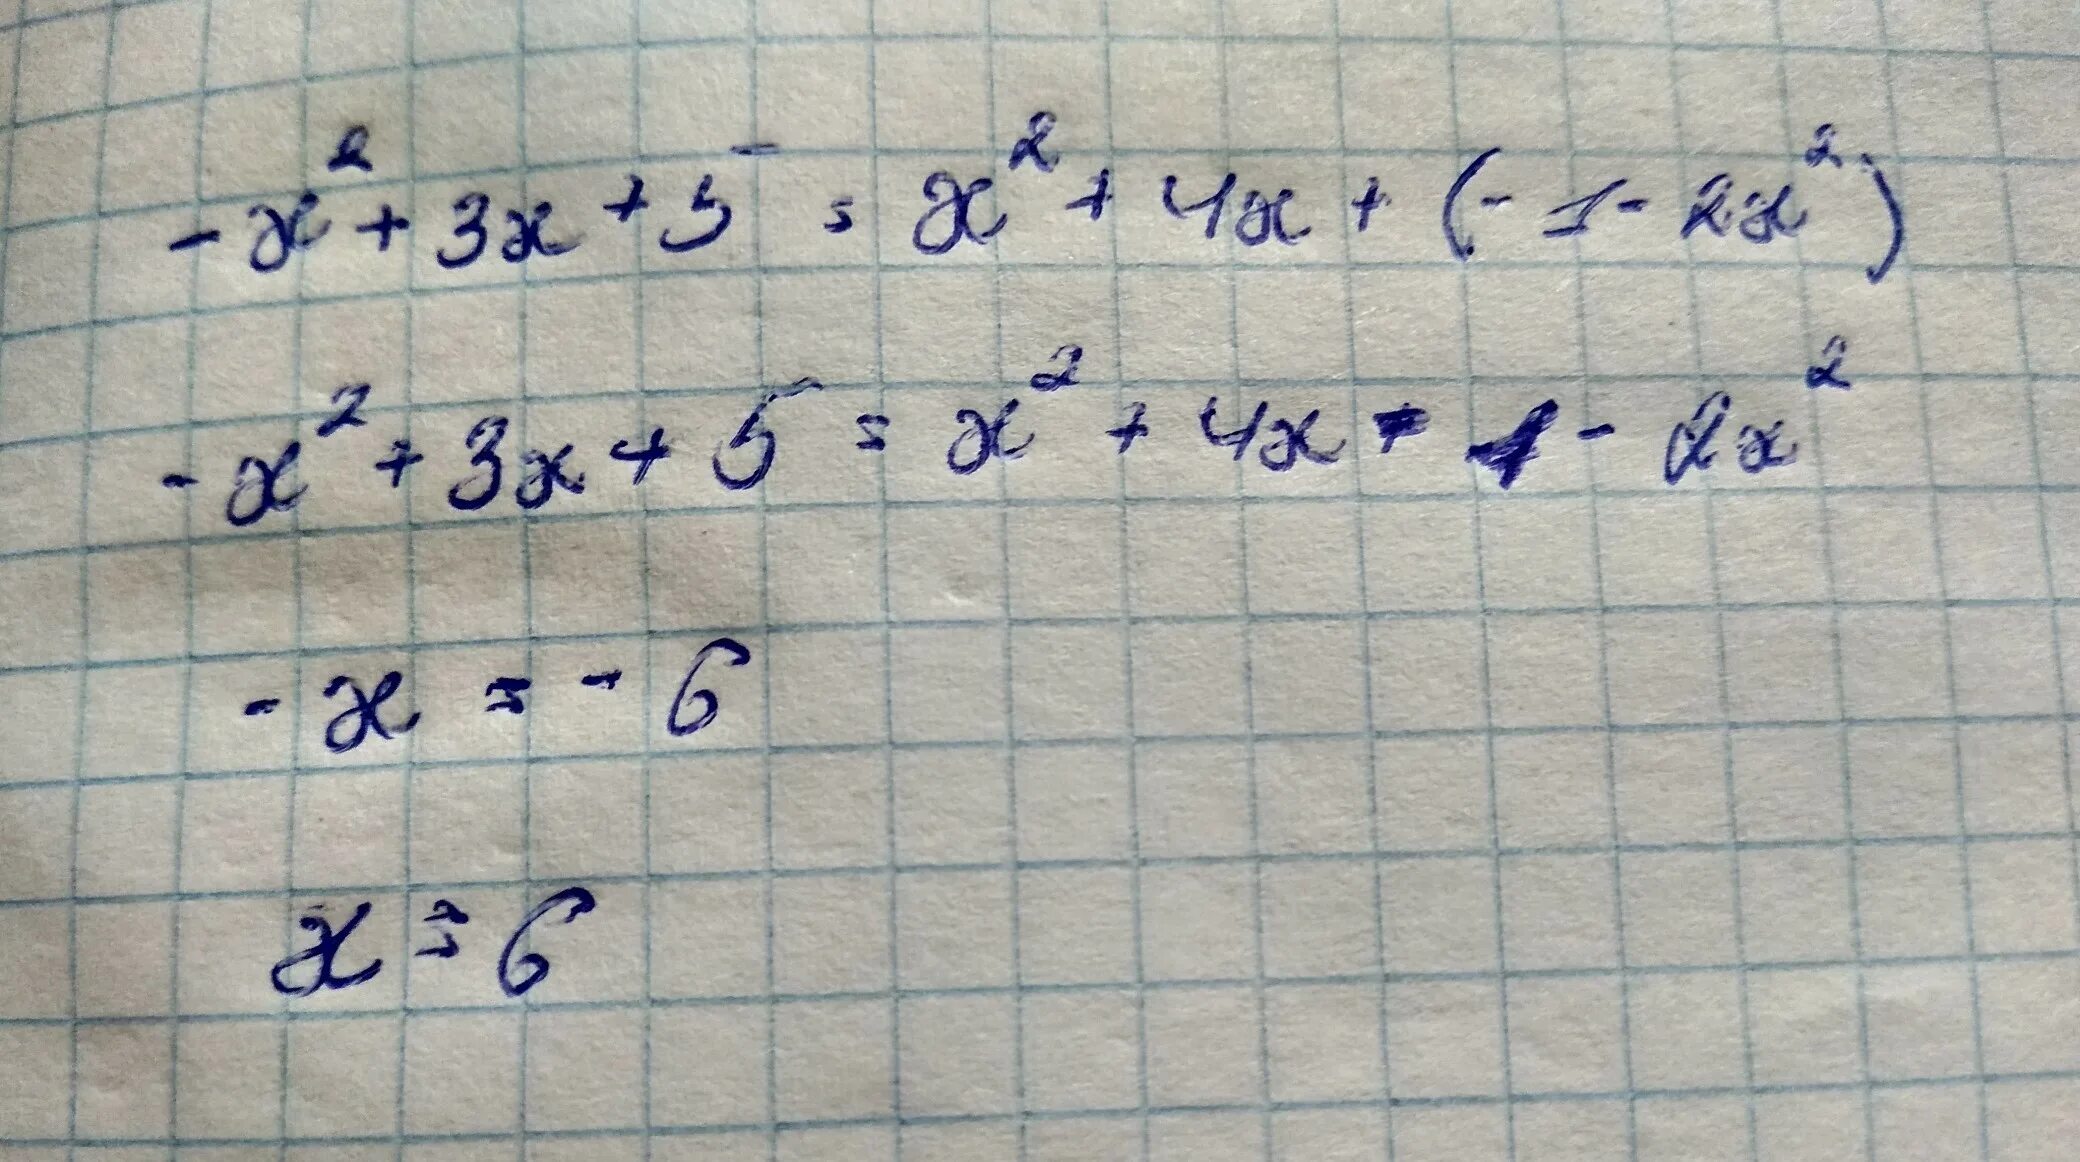 3х+5х+(х+5)=. 3(Х-1)=2(Х+). 3х+1х+ 45-14. 〖 5〗^Х = Х+ 4.